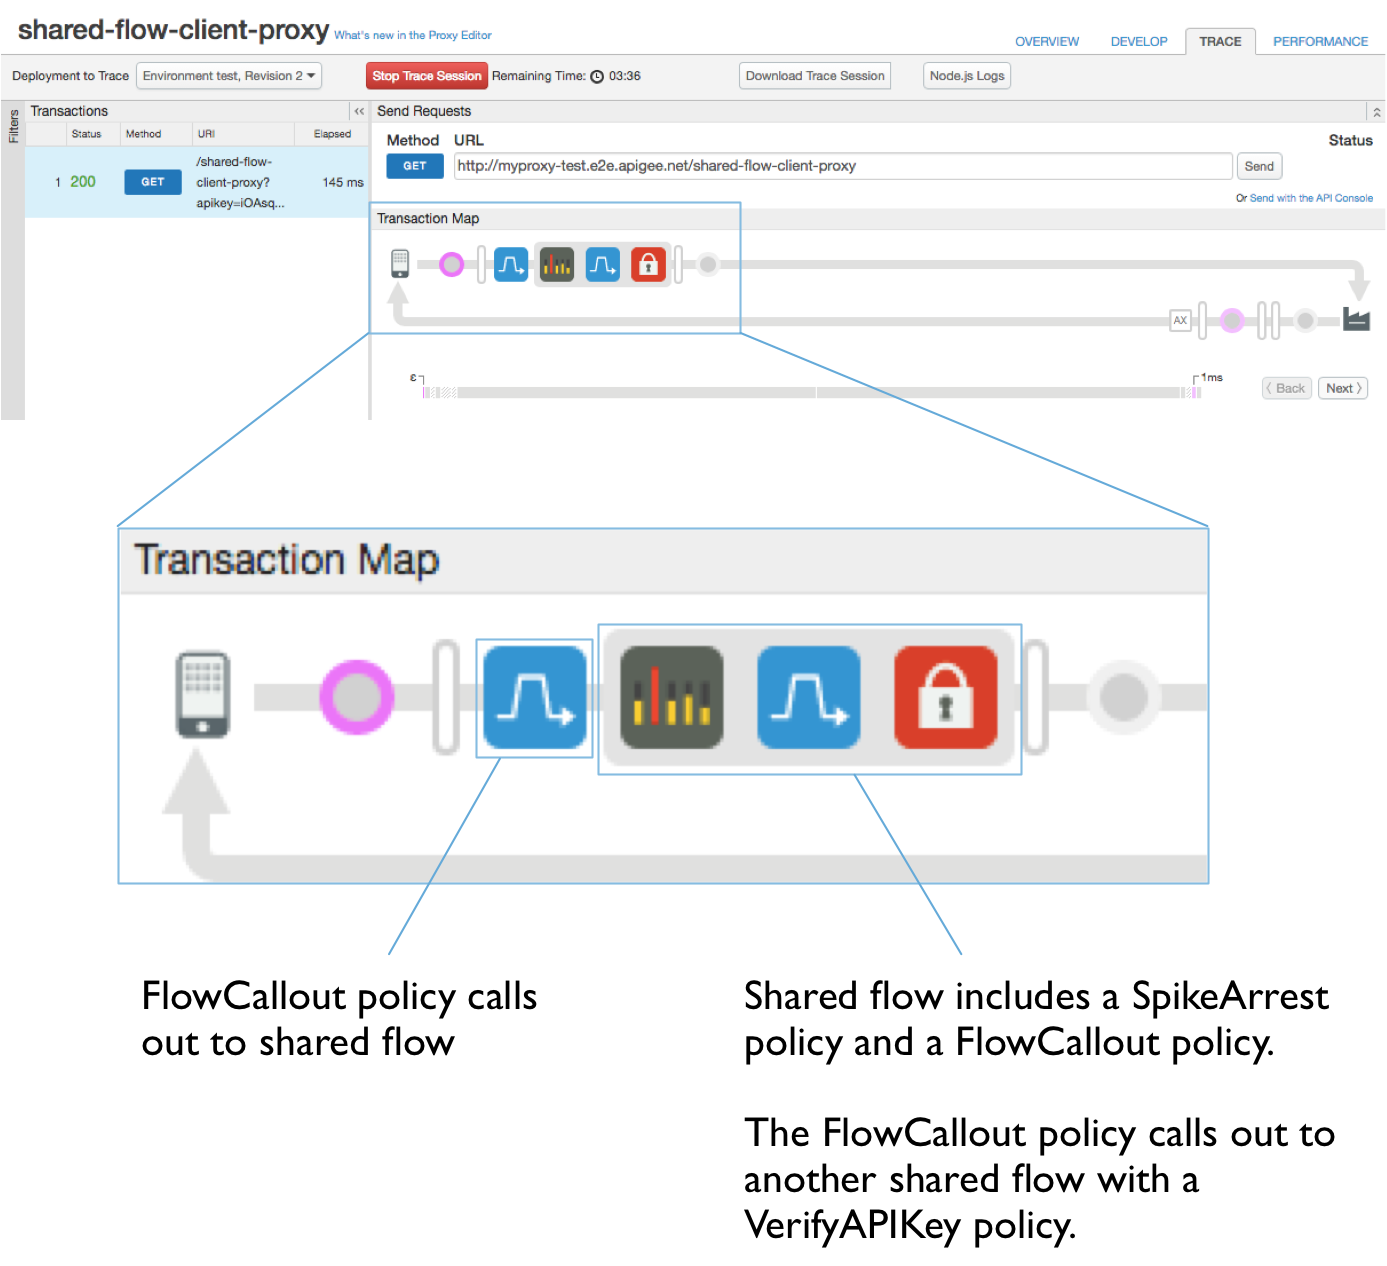 Mapa de transacciones.  Texto destacado:
            a) La política de FlowCallout llama al flujo compartido.
            b) El flujo compartido incluye una política de SpikeArrest y una política de FlowCallout.
            La política de FlowCallout llama a otro flujo compartido con una política de VerifyAPIKey.